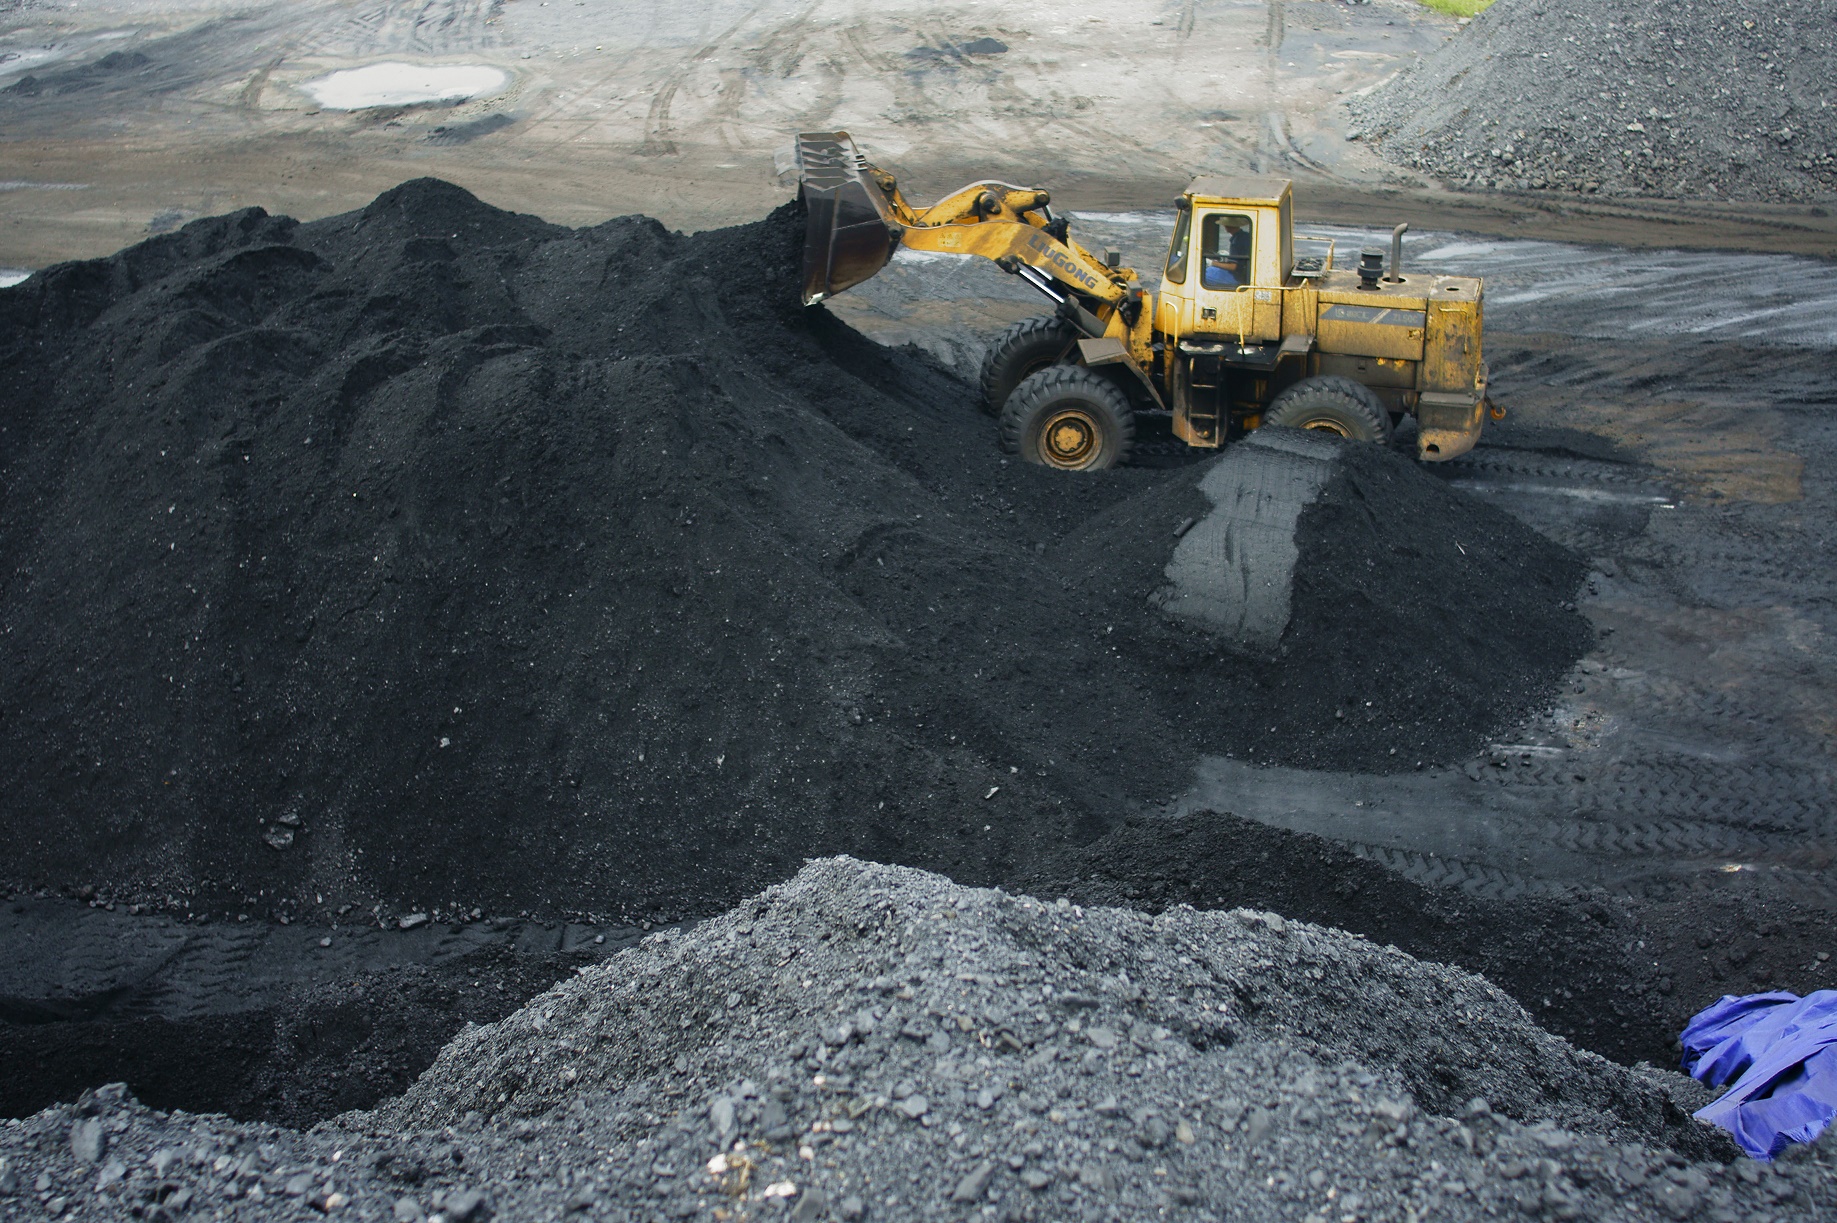 A produção massiva de carvão na China é um dos principais símbolos do impacto do homem sobre o planeta. Foto de Zhou jianping / Imaginechina